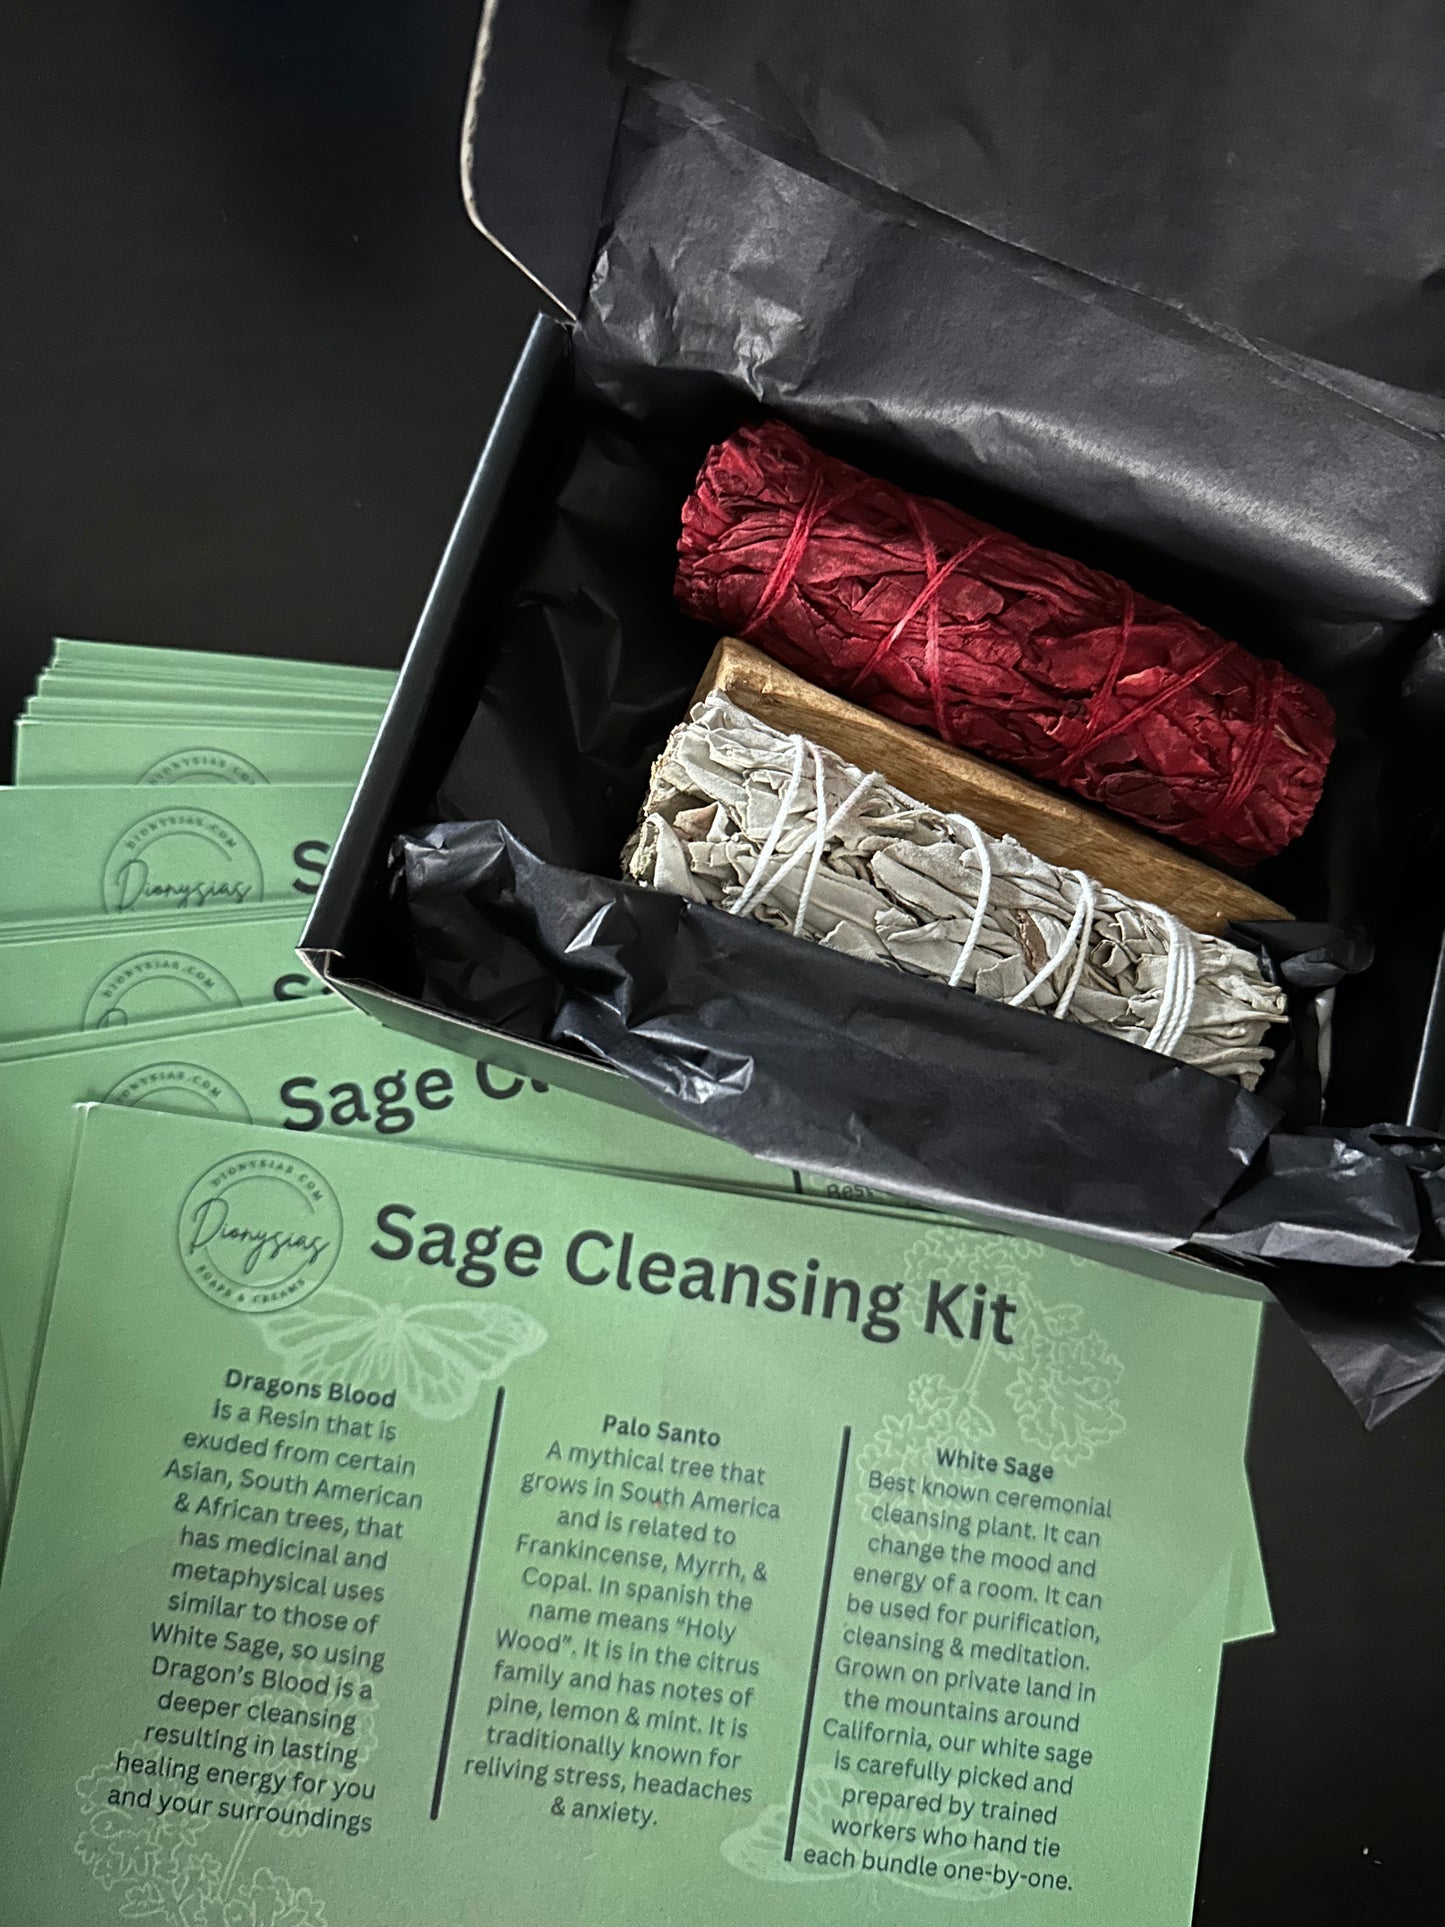 Sage Cleansing Kit